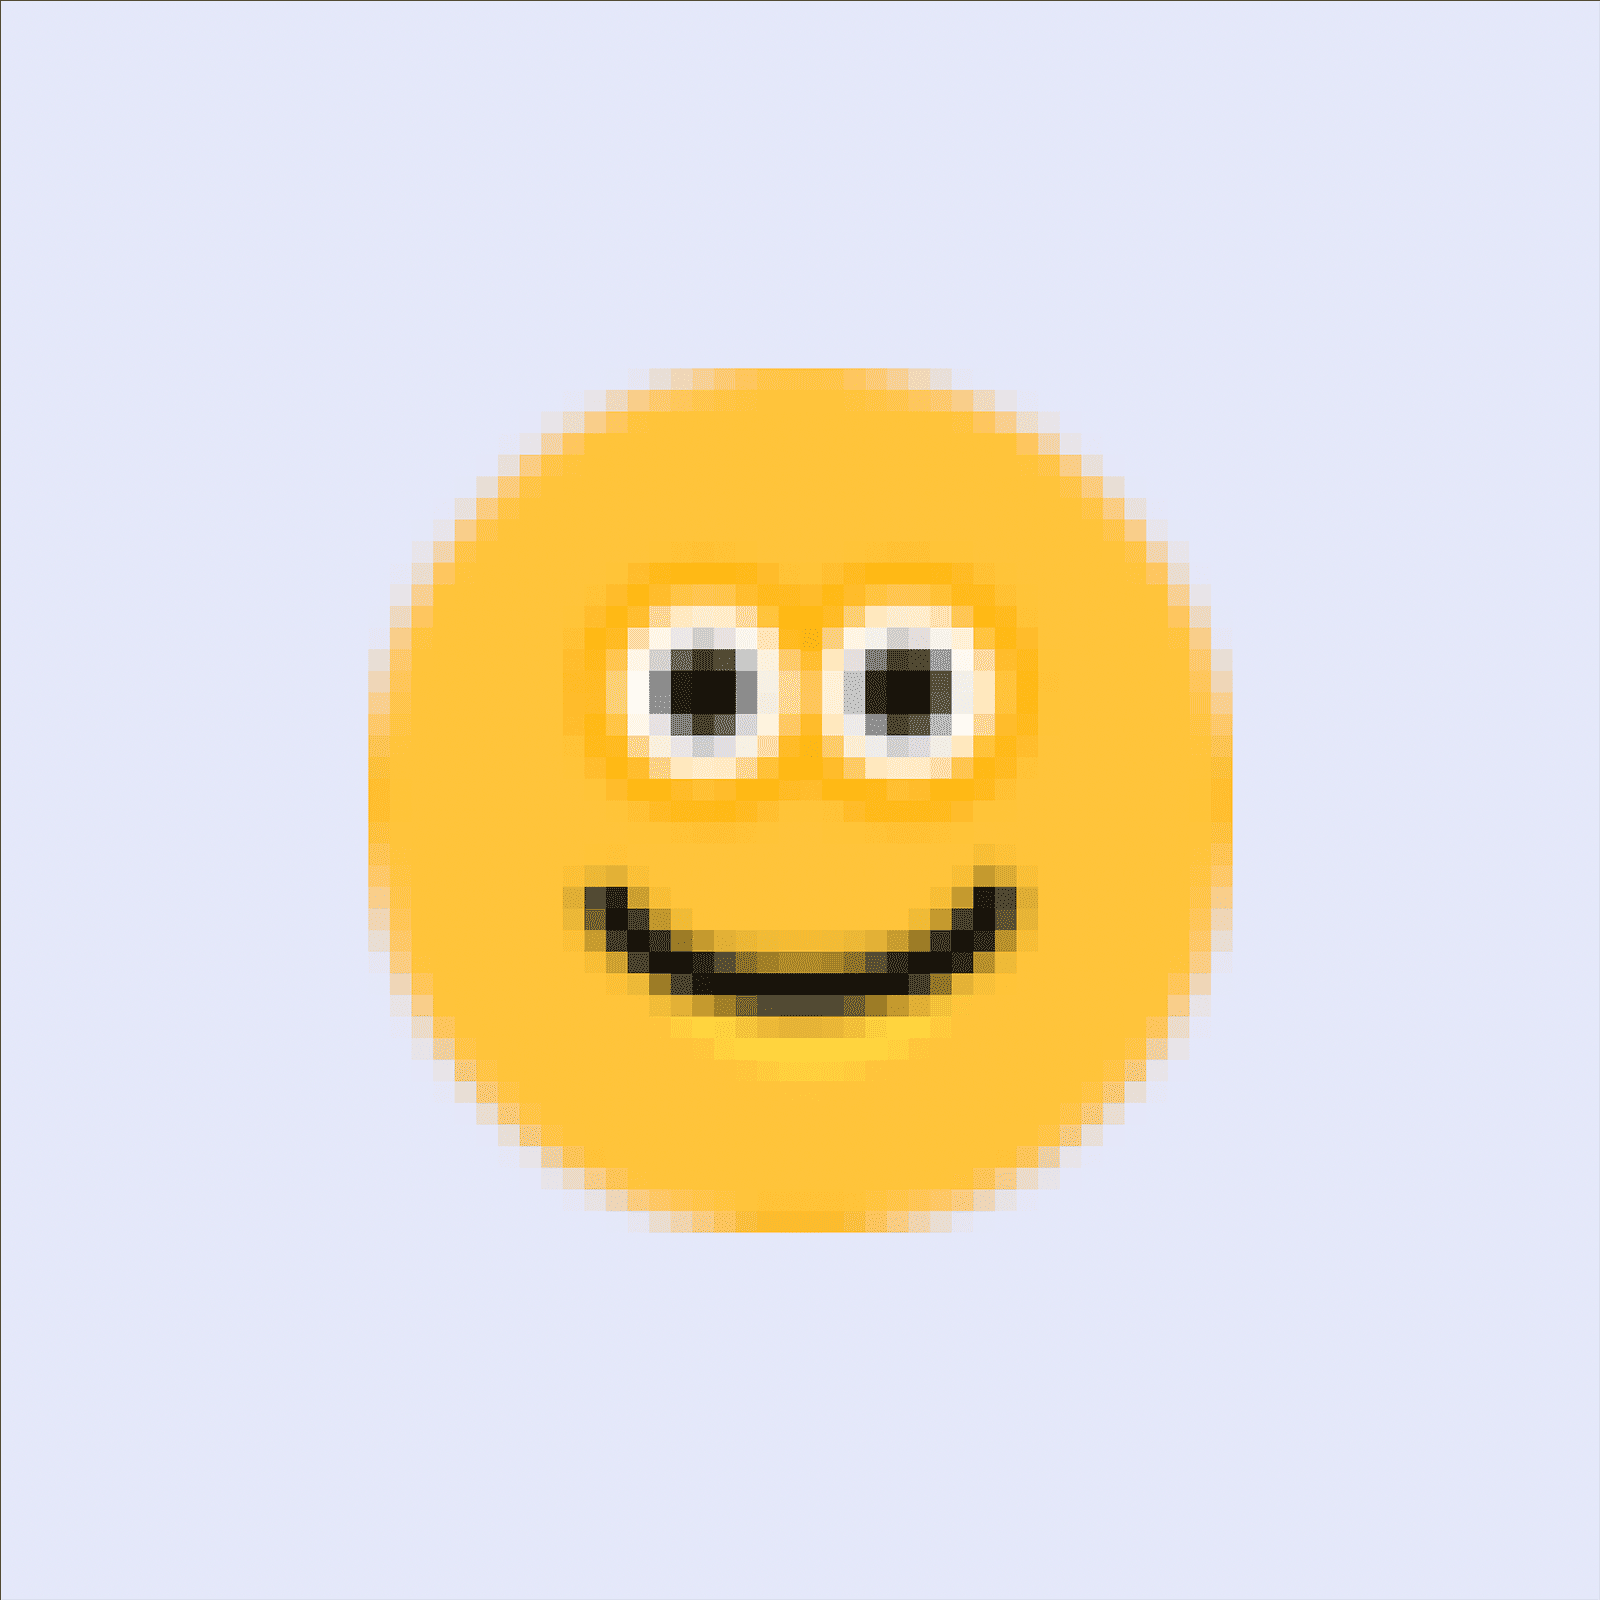 smiley face emoji